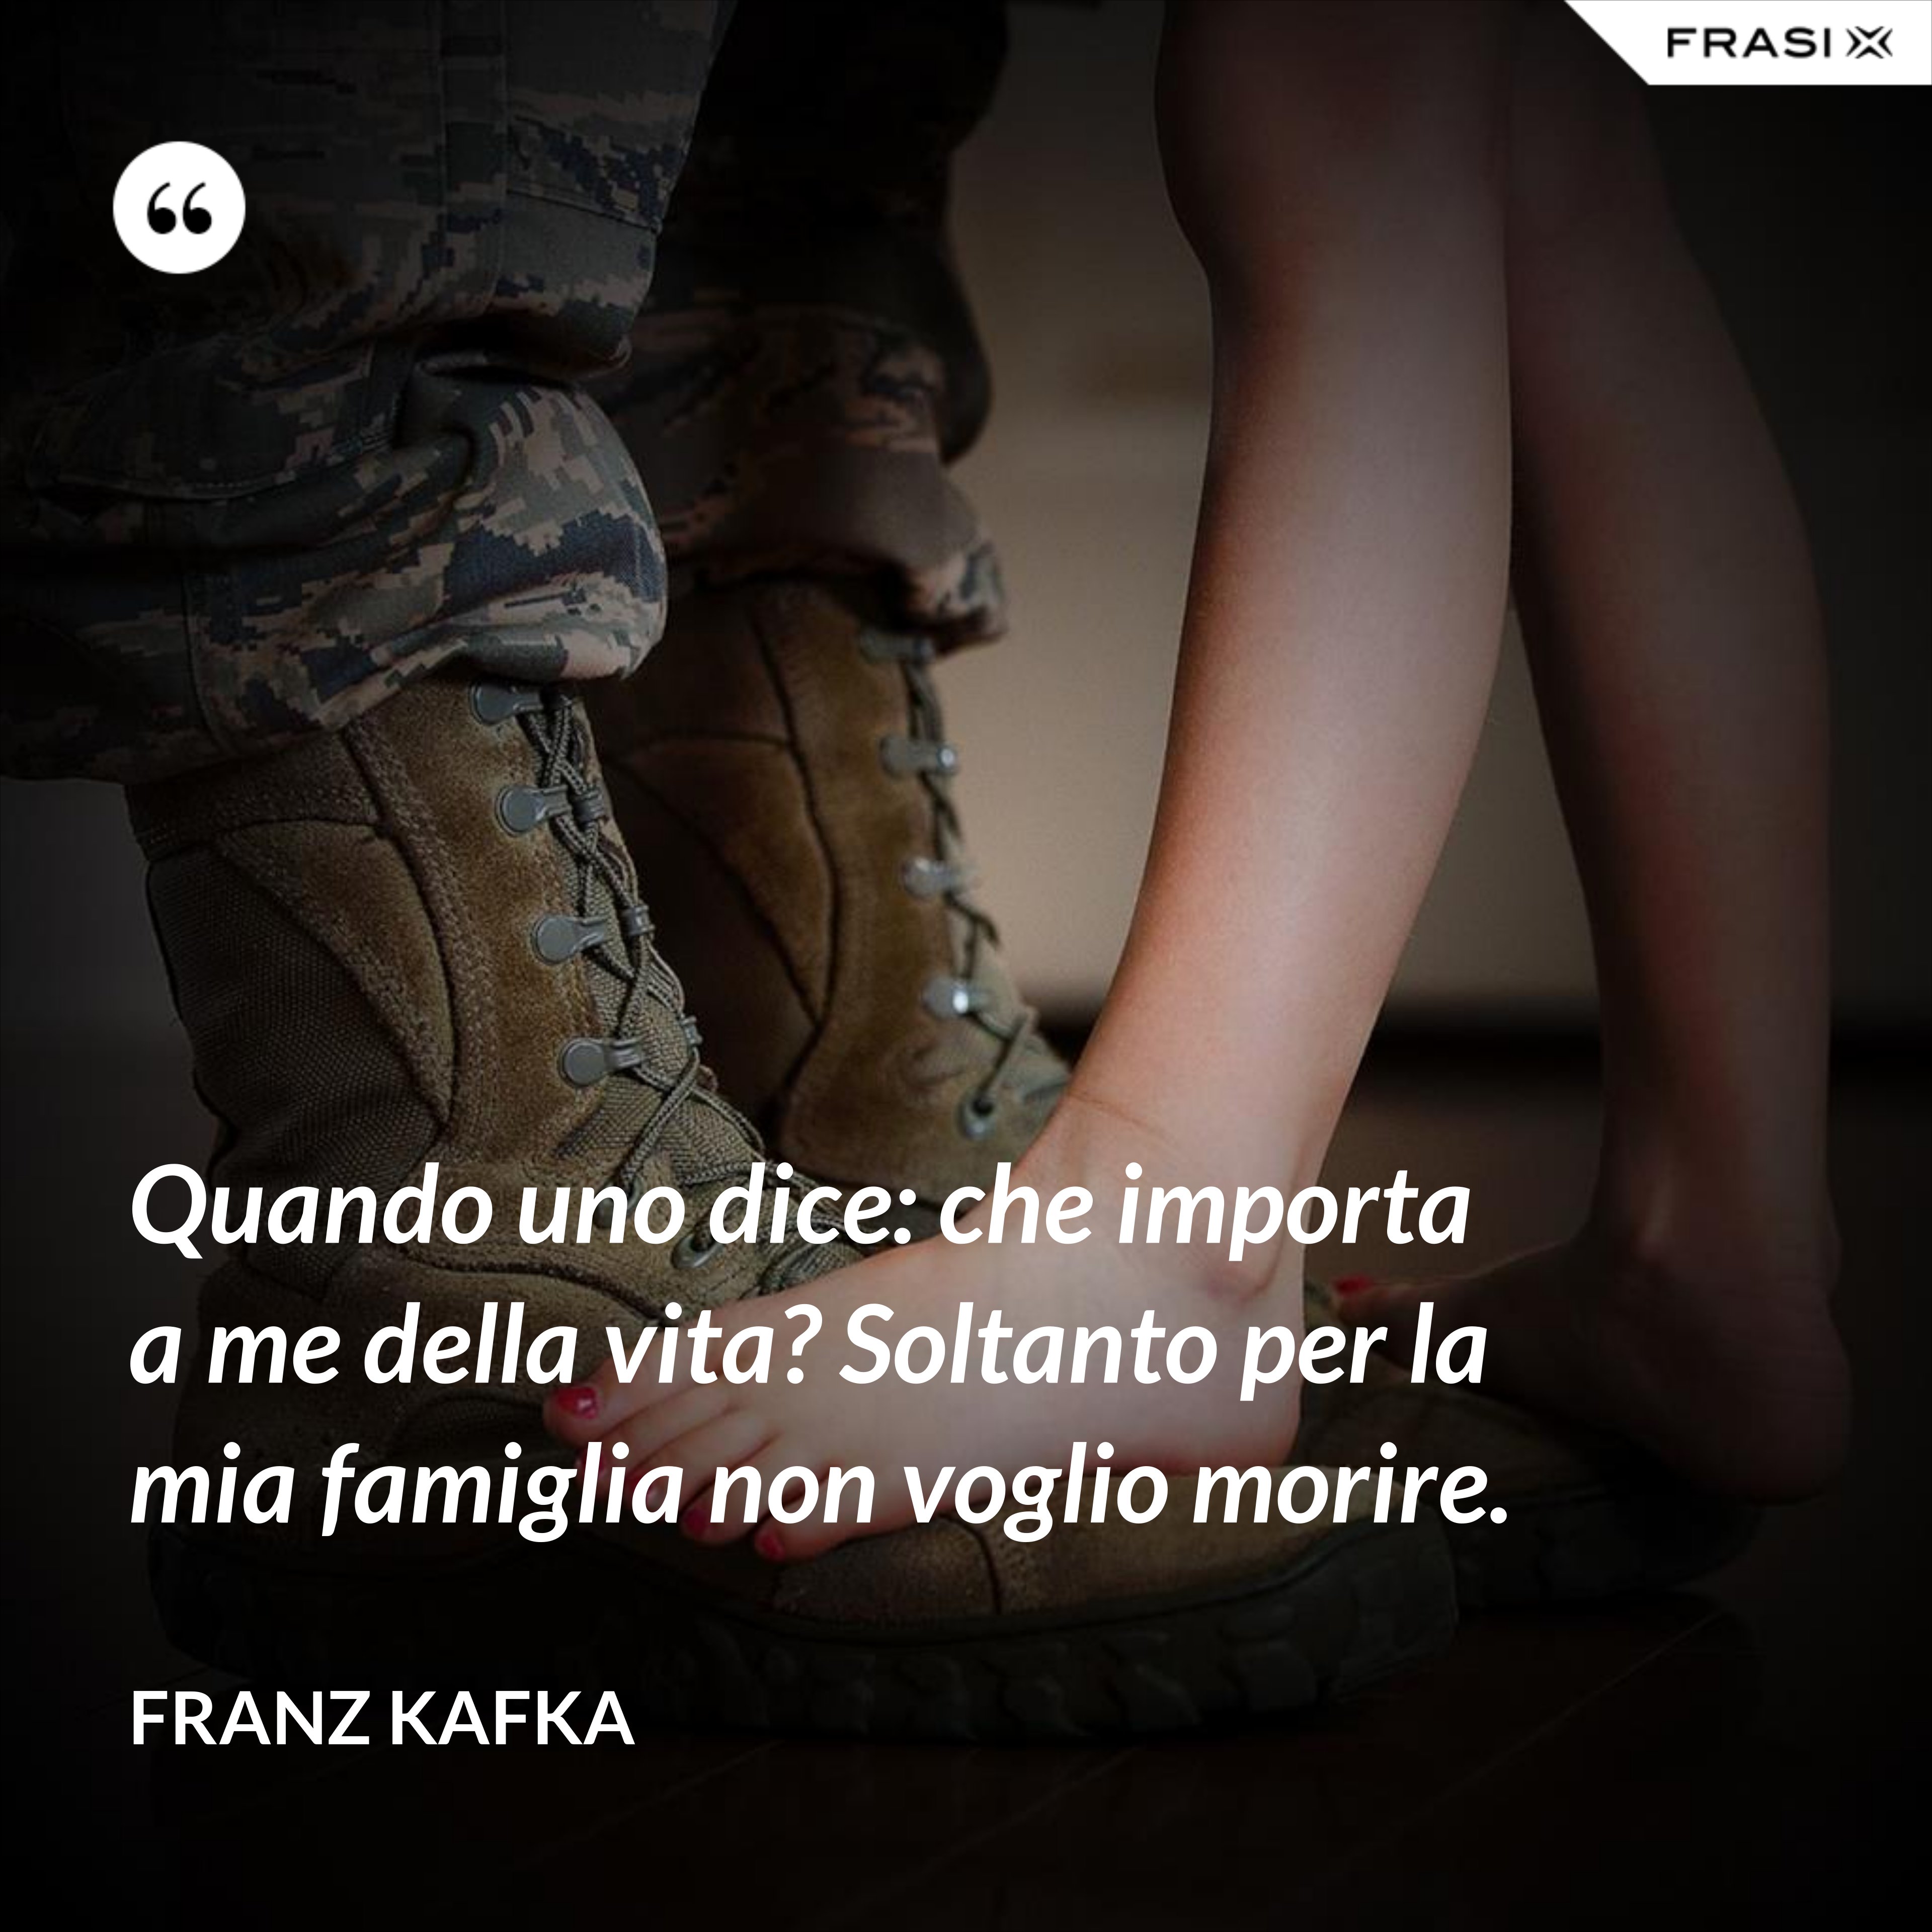 Quando uno dice: che importa a me della vita? Soltanto per la mia famiglia non voglio morire. - Franz Kafka